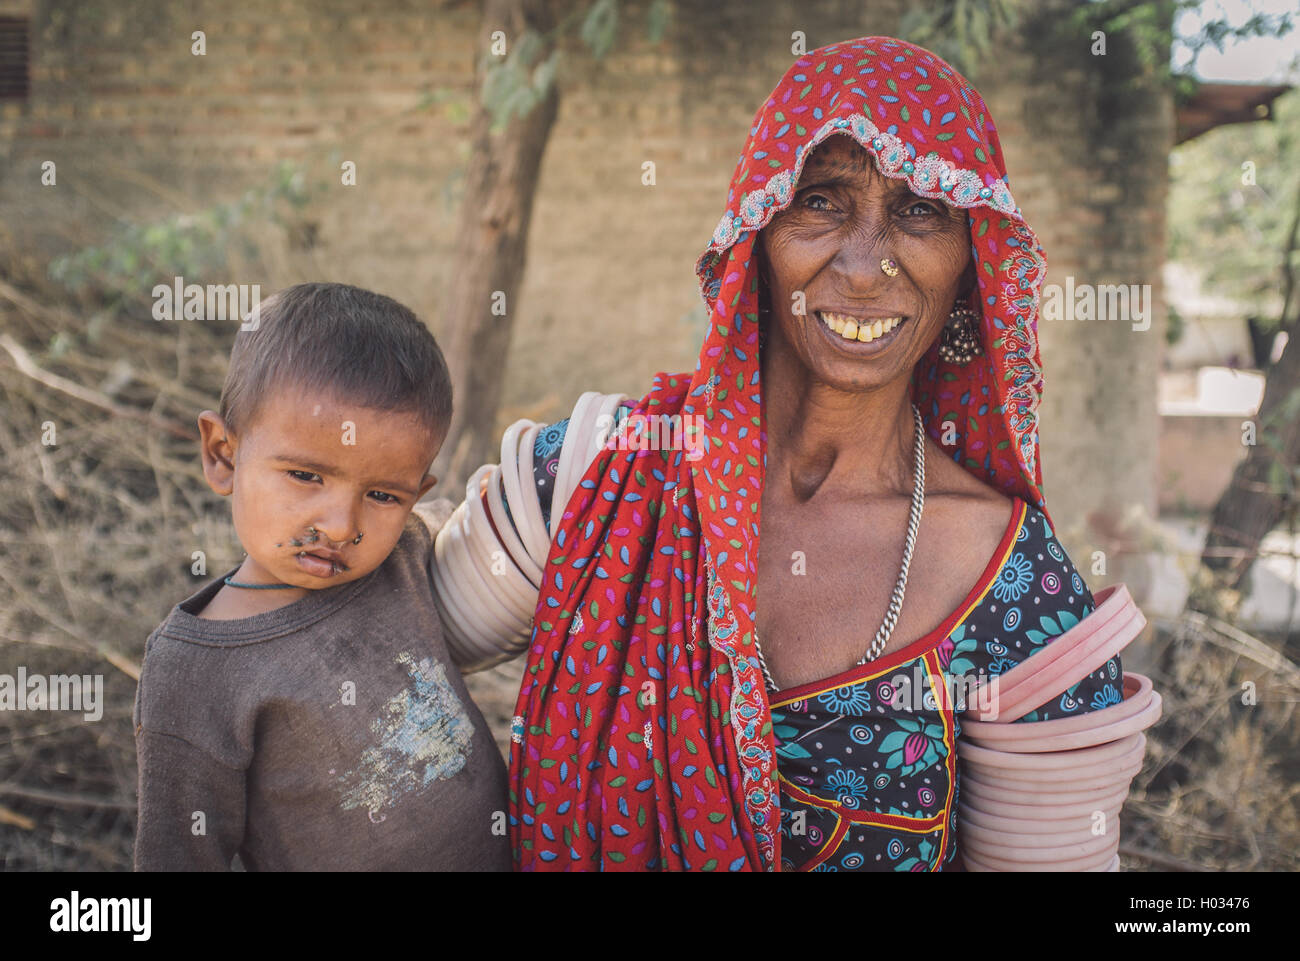 Regione GODWAR, India - 15 febbraio 2015: Anziani tribeswoman indiano indossa abiti tradizionali decorazioni. Il bambino ha le mosche intorno Foto Stock